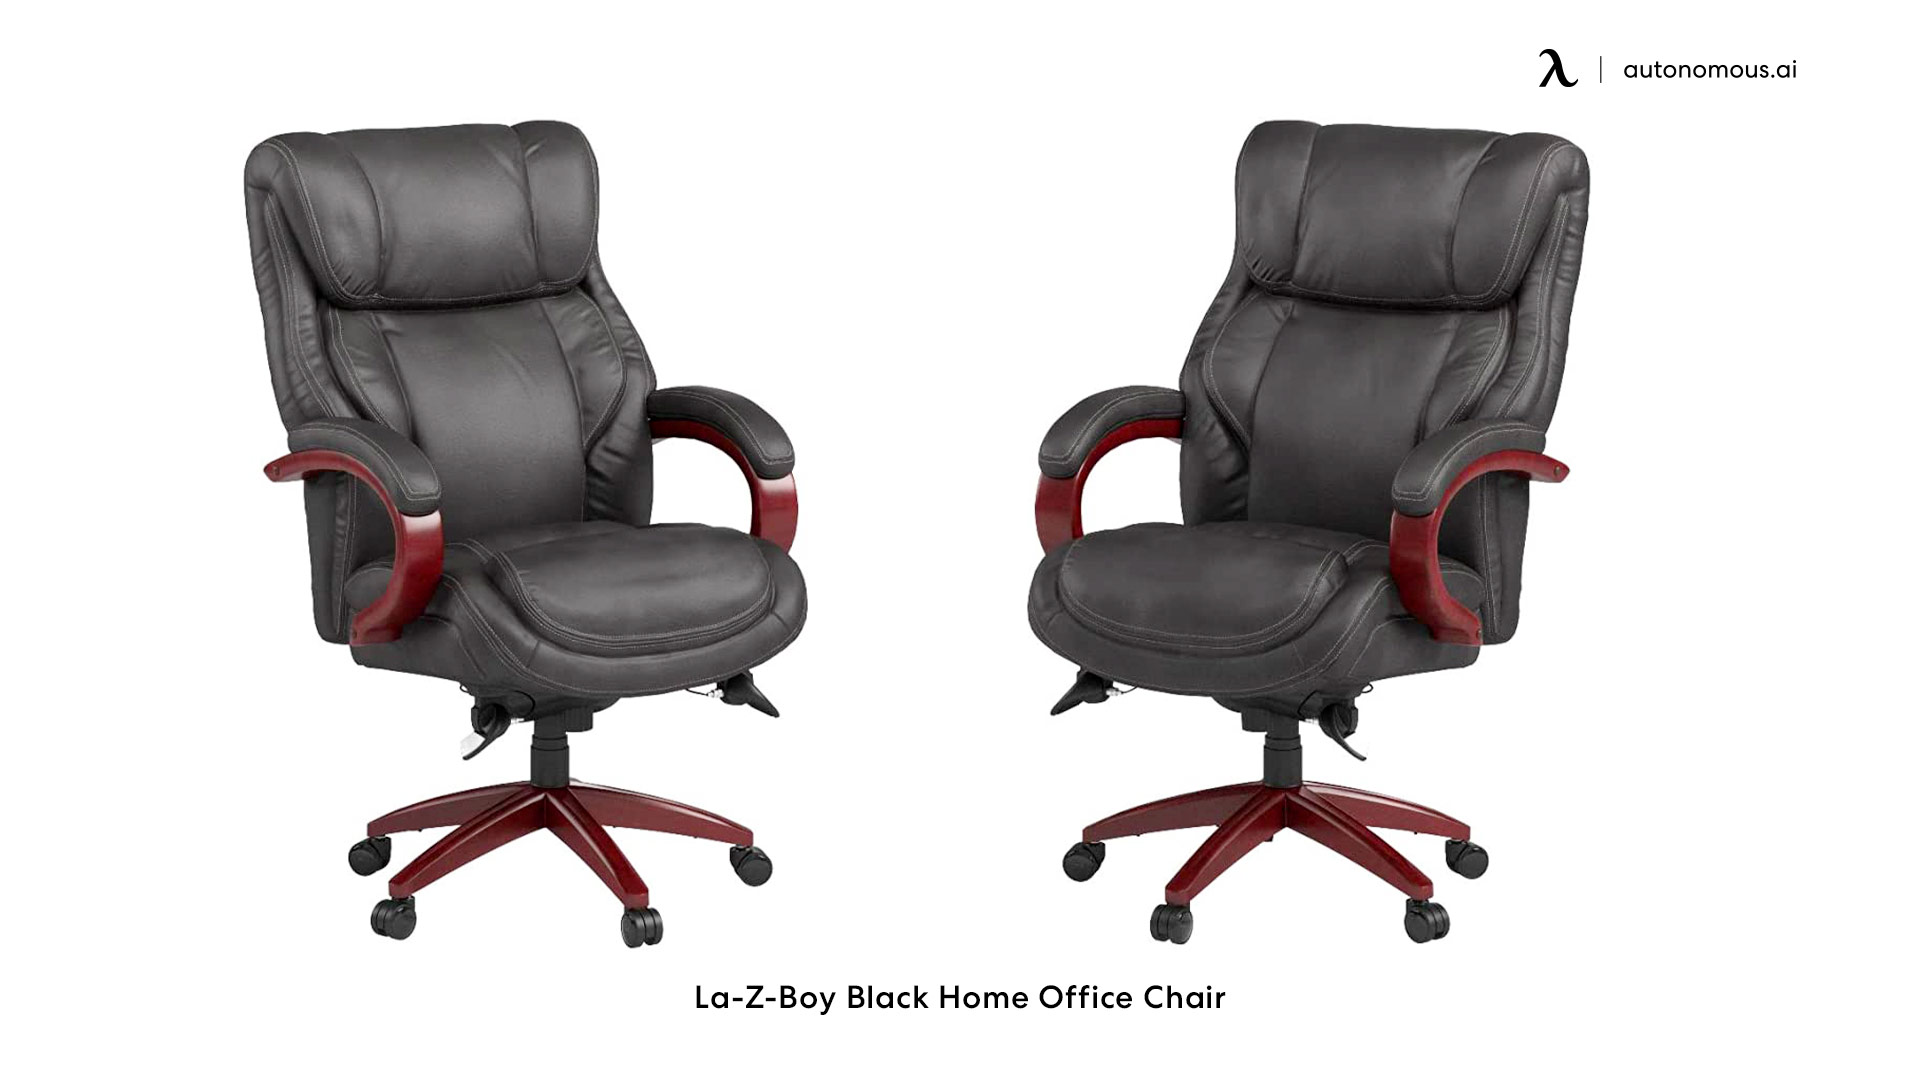 La-Z-Boy Trafford black office chair